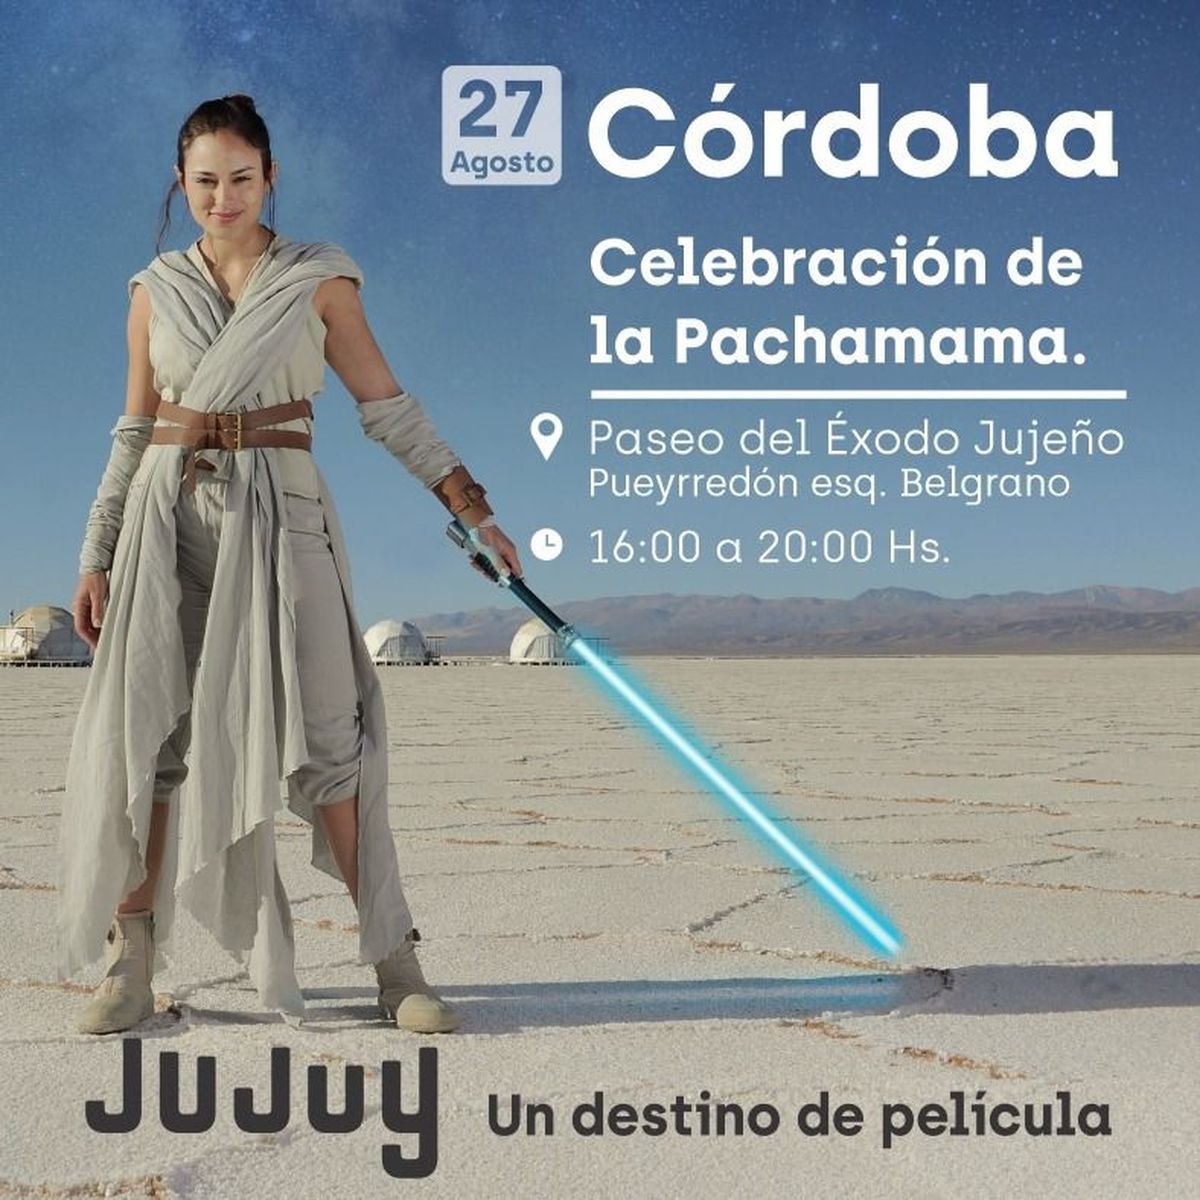 Jujuy llega con la promoción a Córdoba